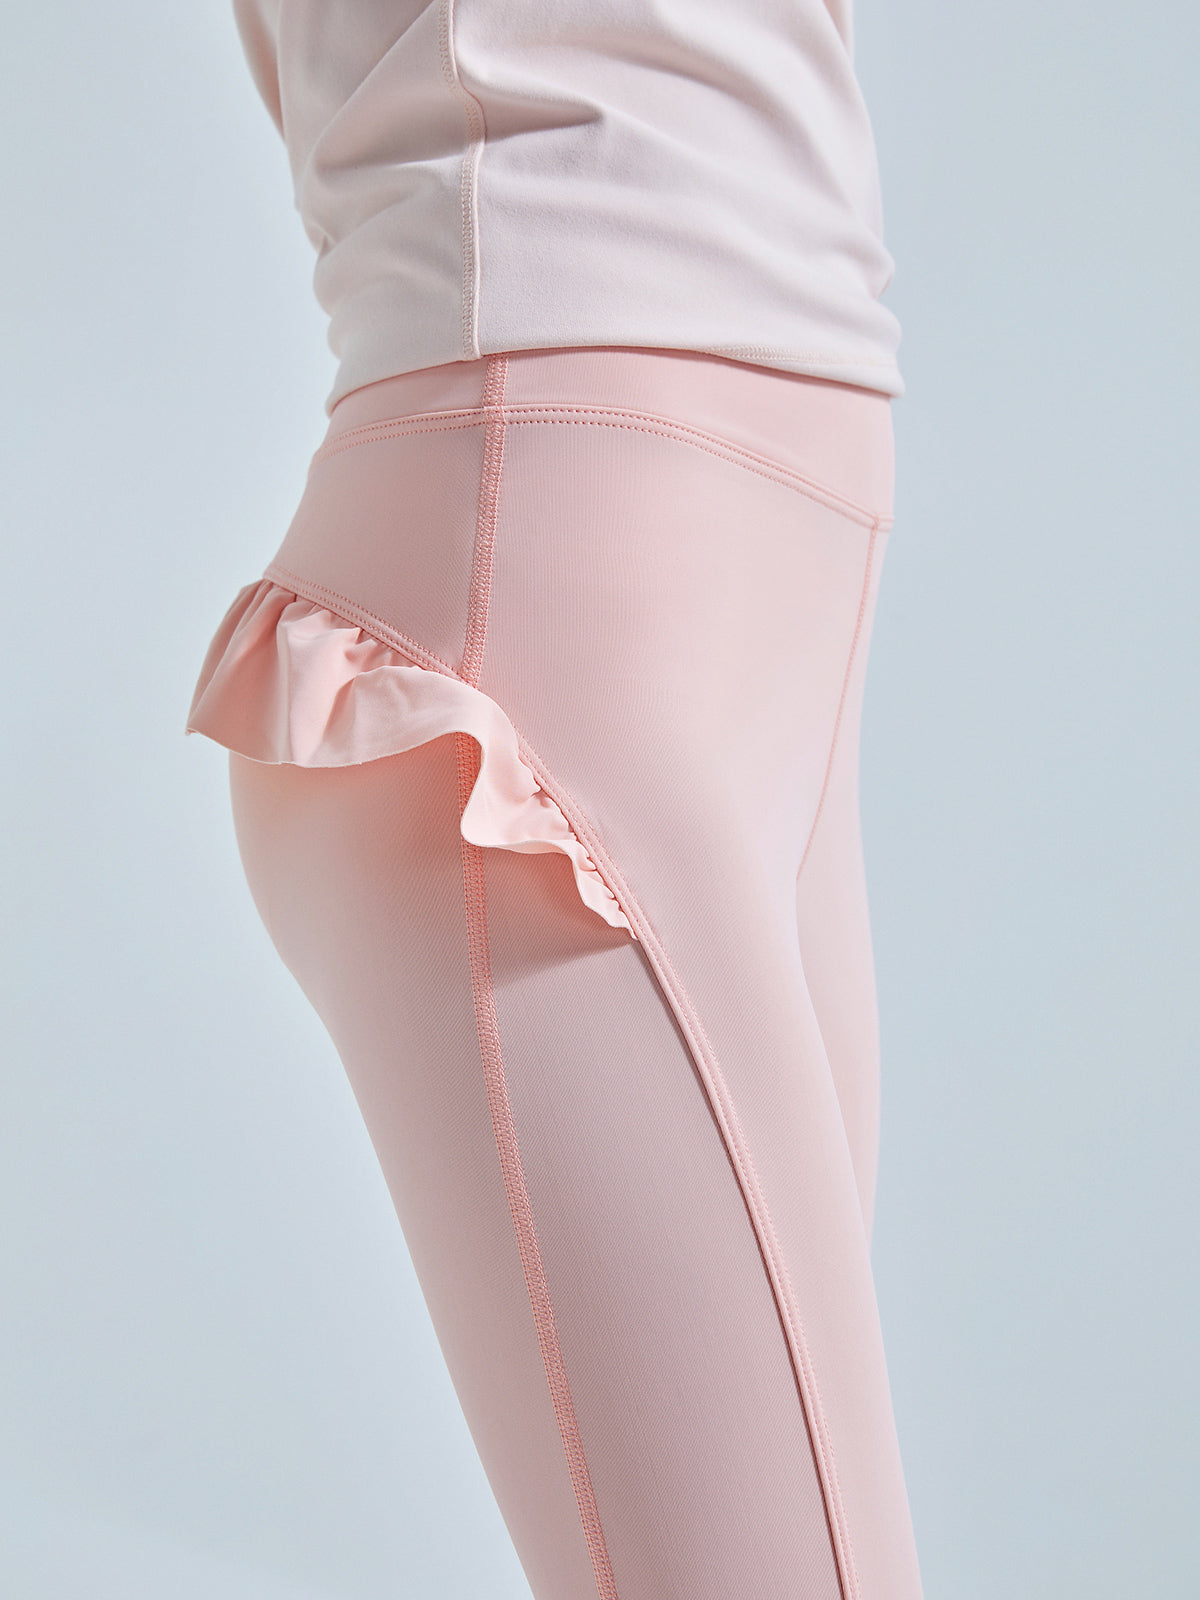 Hot Pink Ruffle Pants, Pink Leggings Girls Bottoms